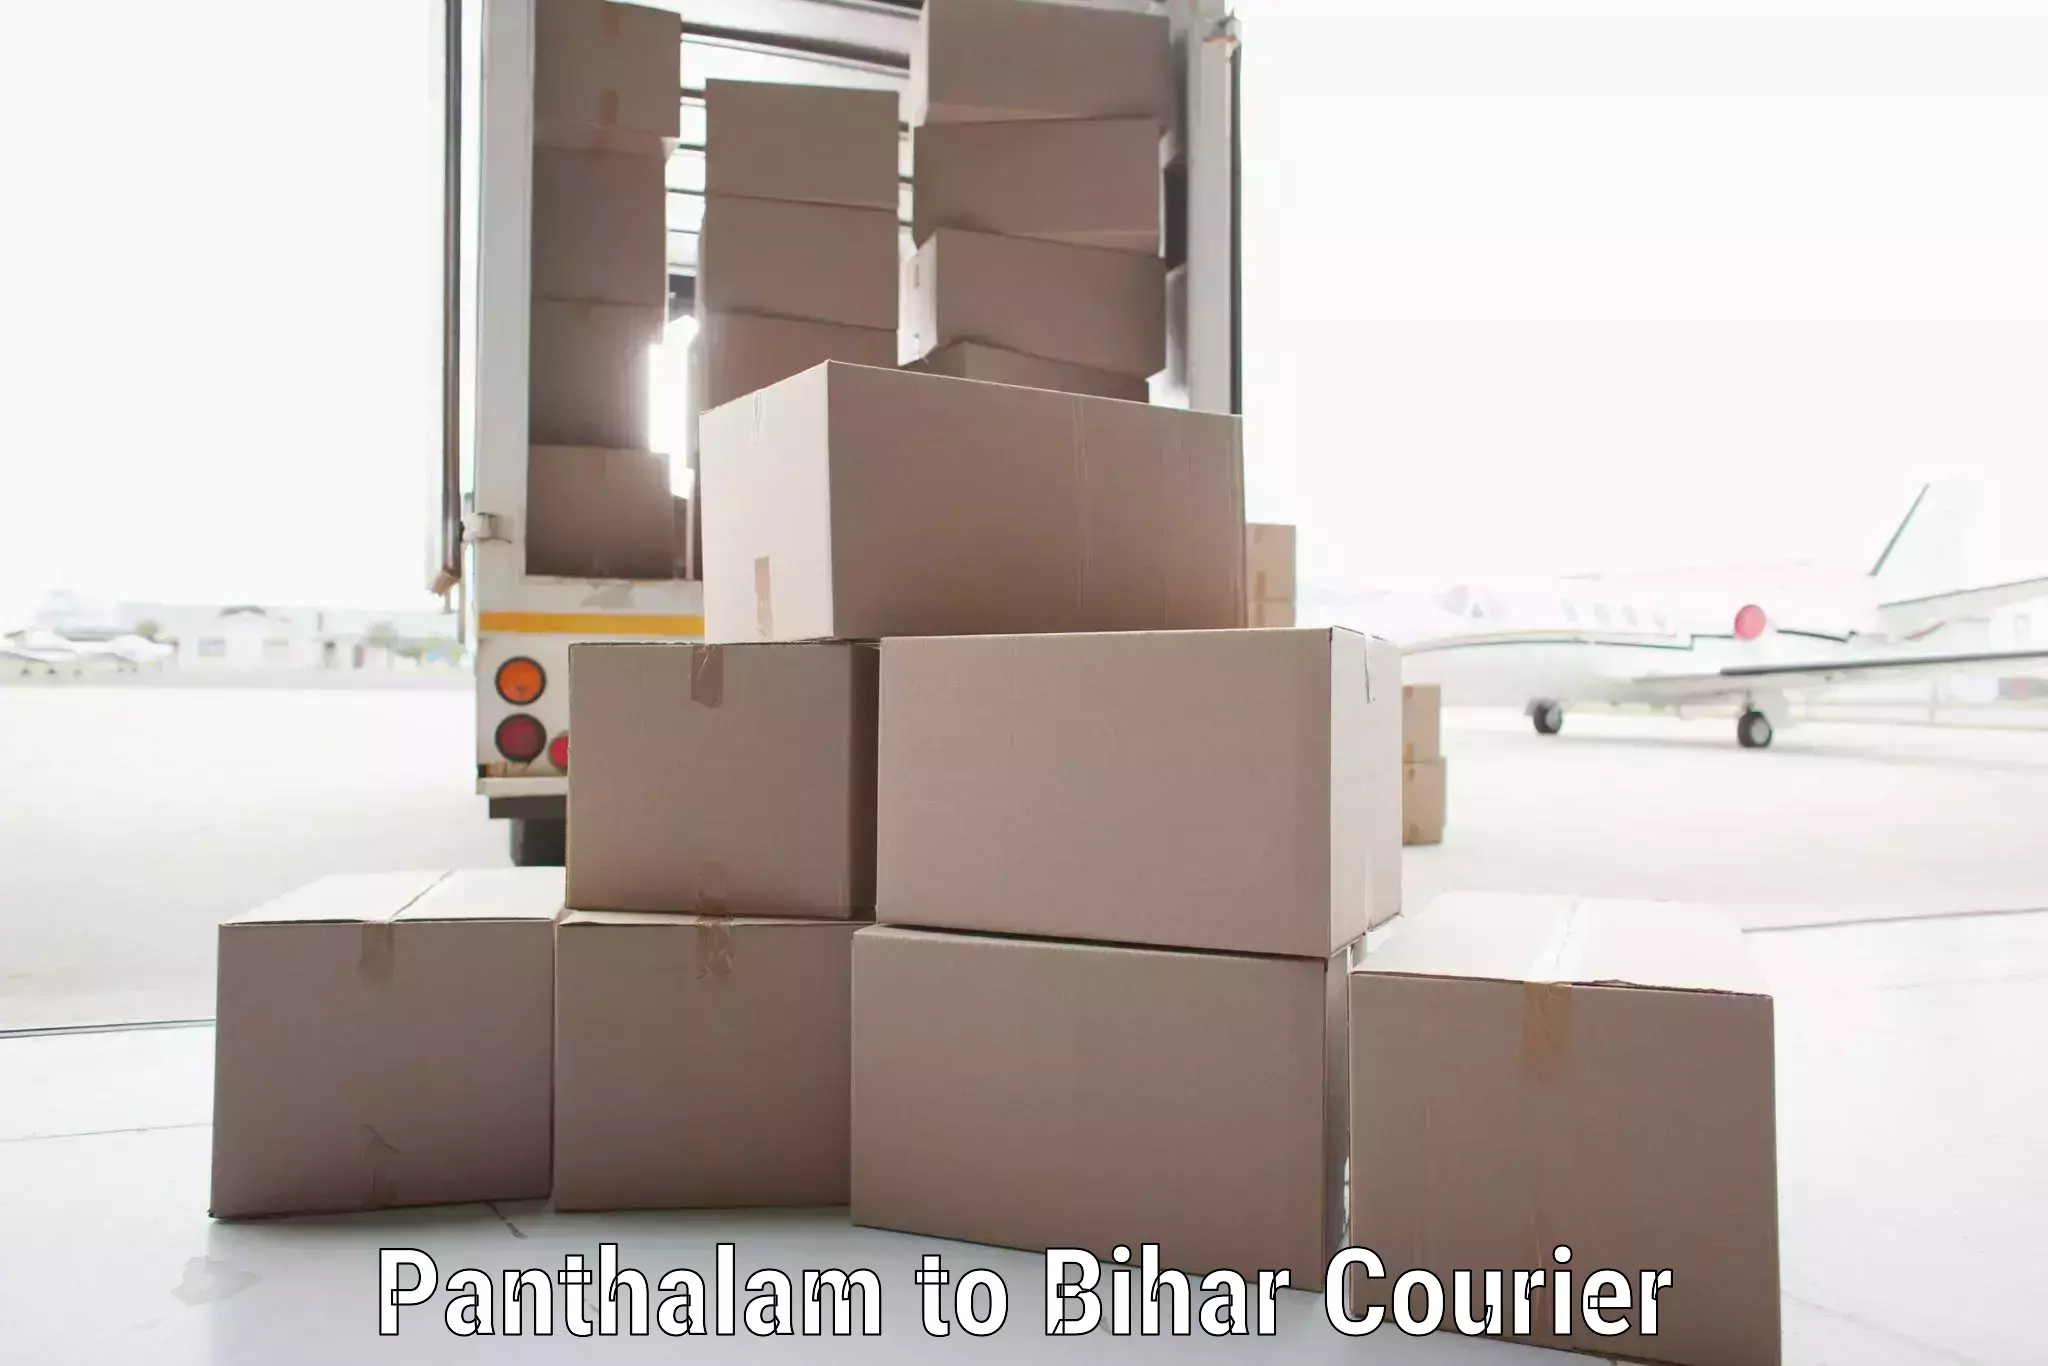 Efficient cargo handling Panthalam to Bihar